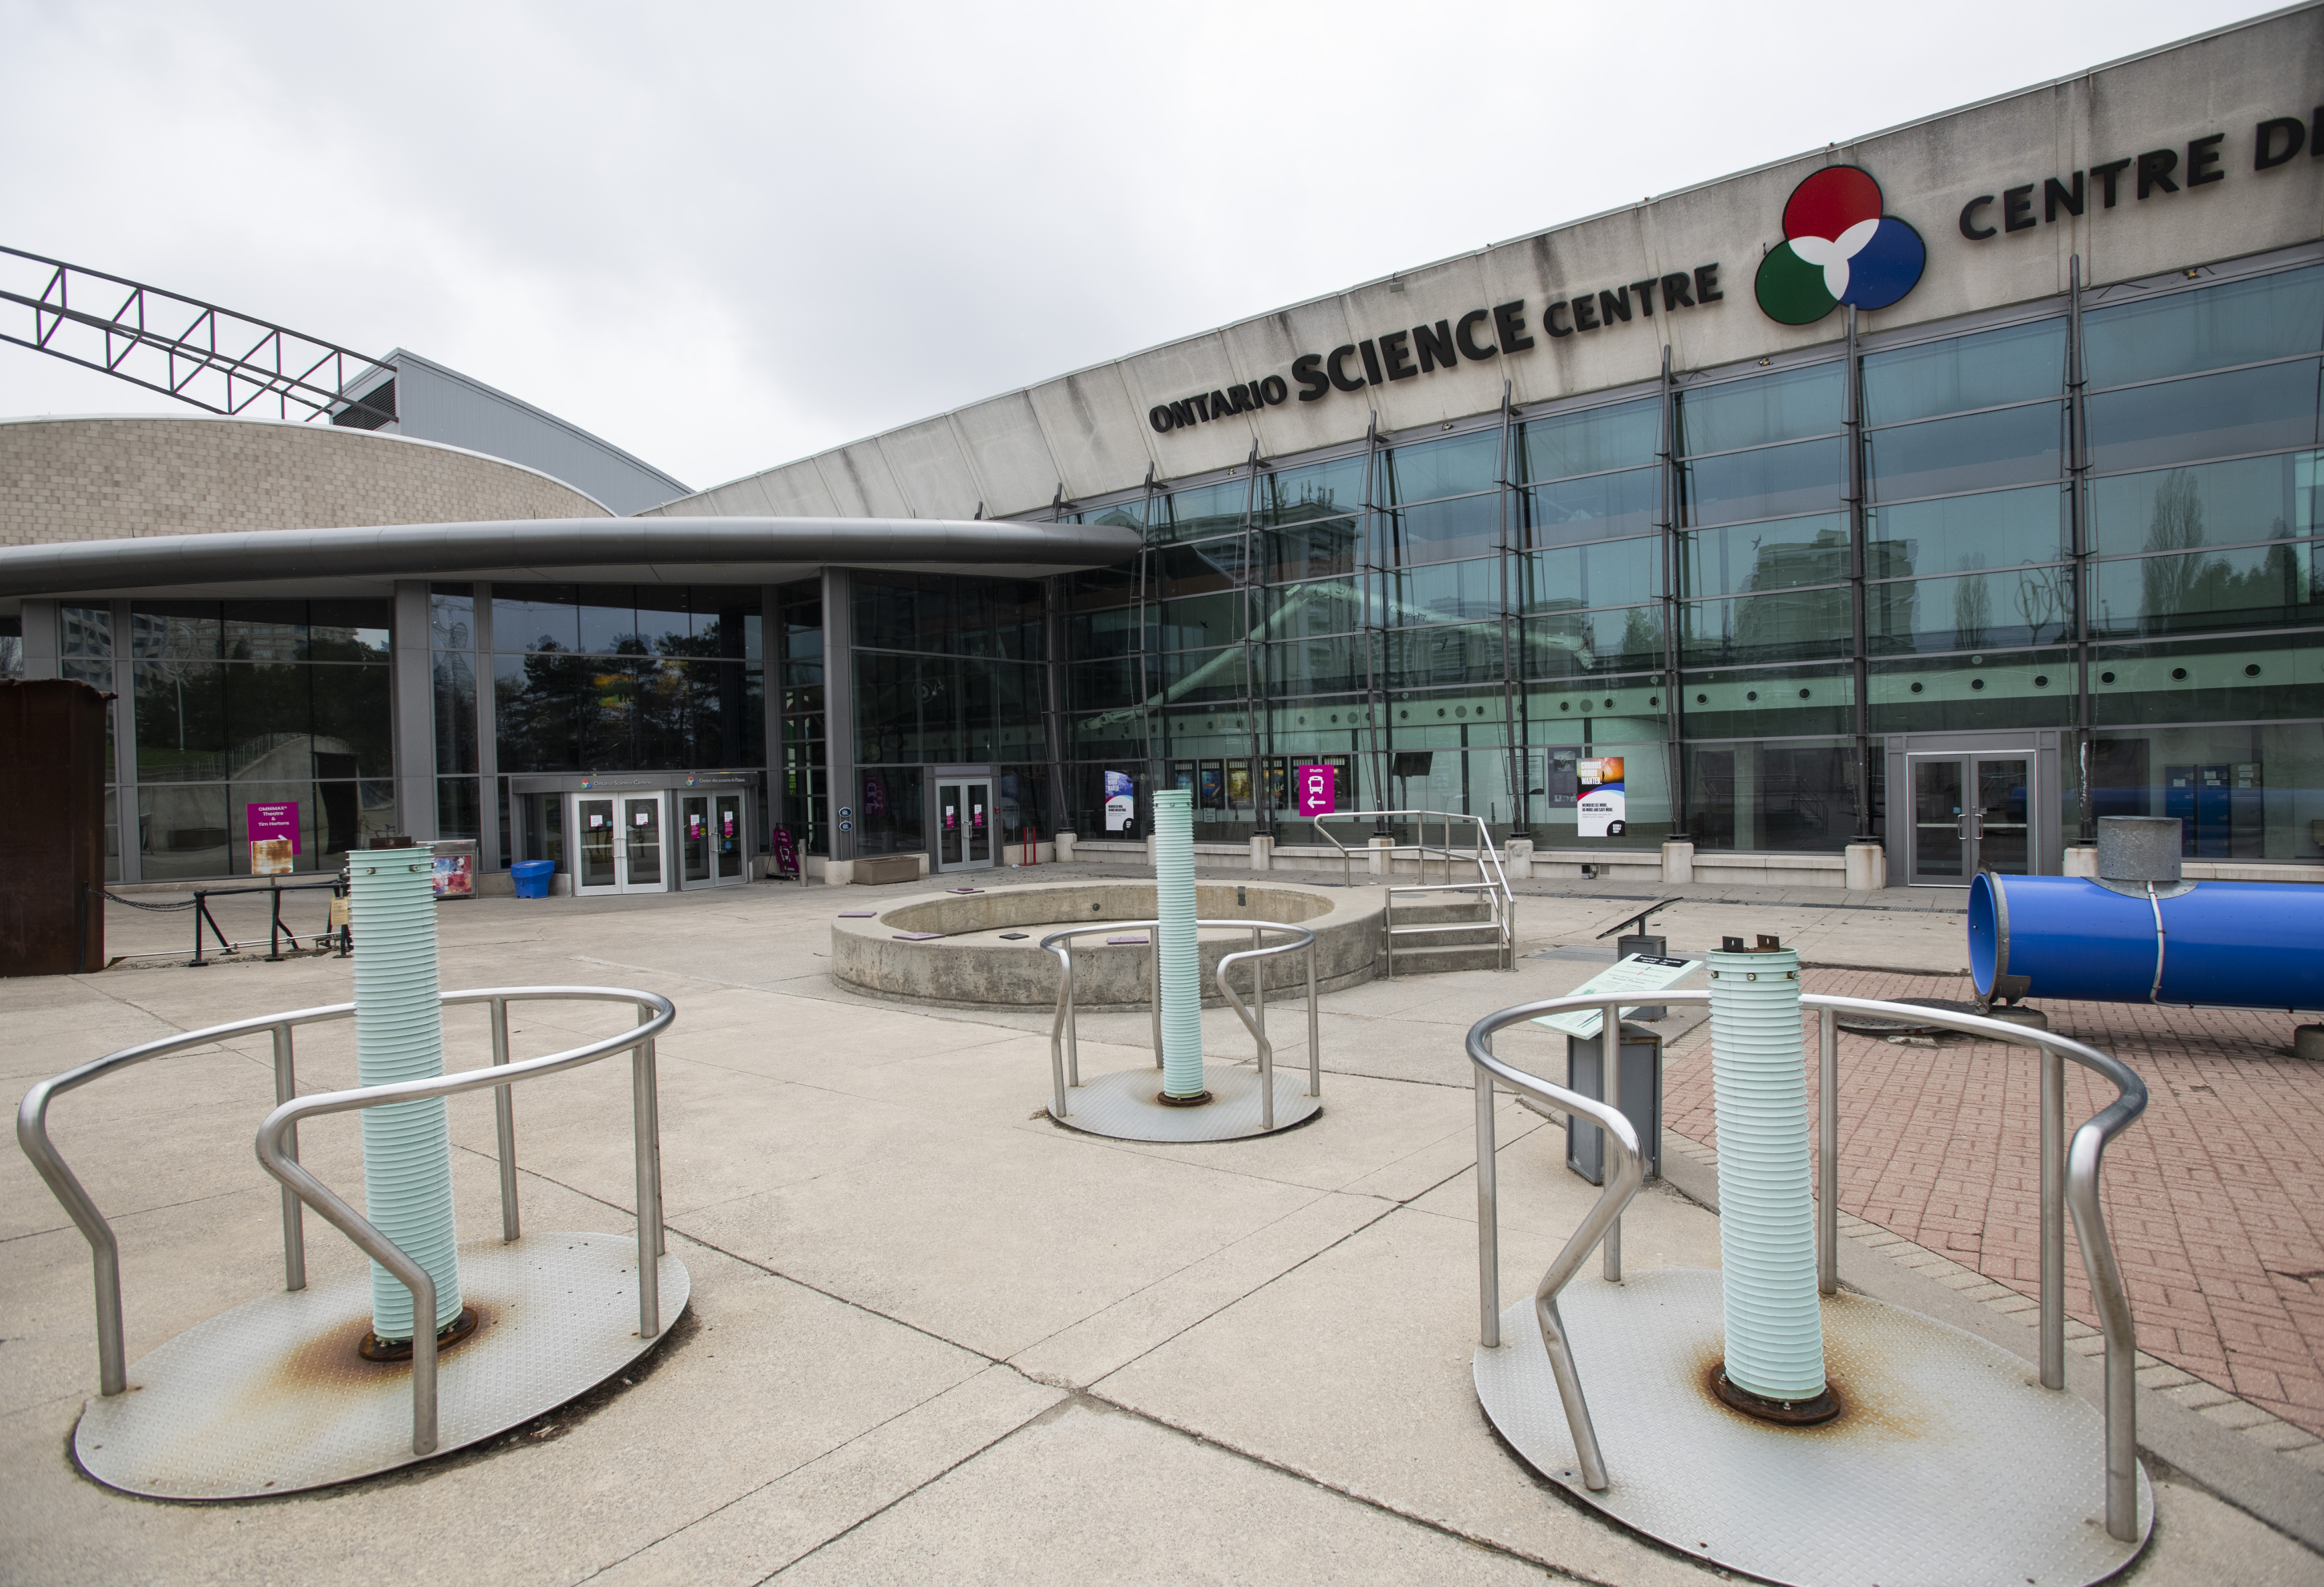 Ontario Science Centre Location